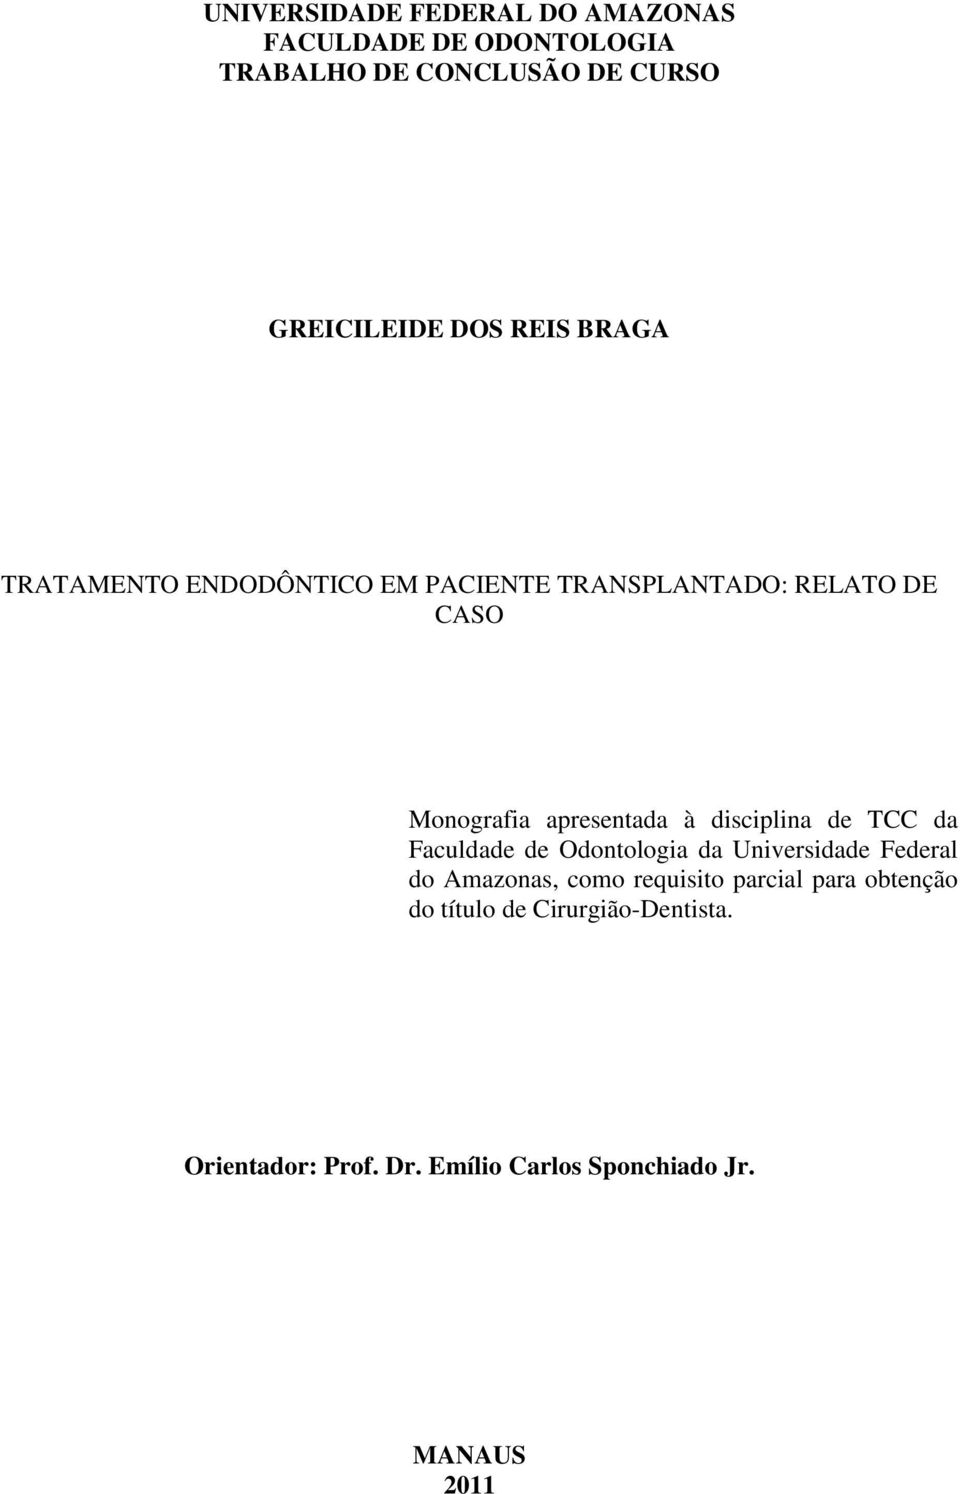 disciplina de TCC da Faculdade de Odontologia da Universidade Federal do Amazonas, como requisito parcial